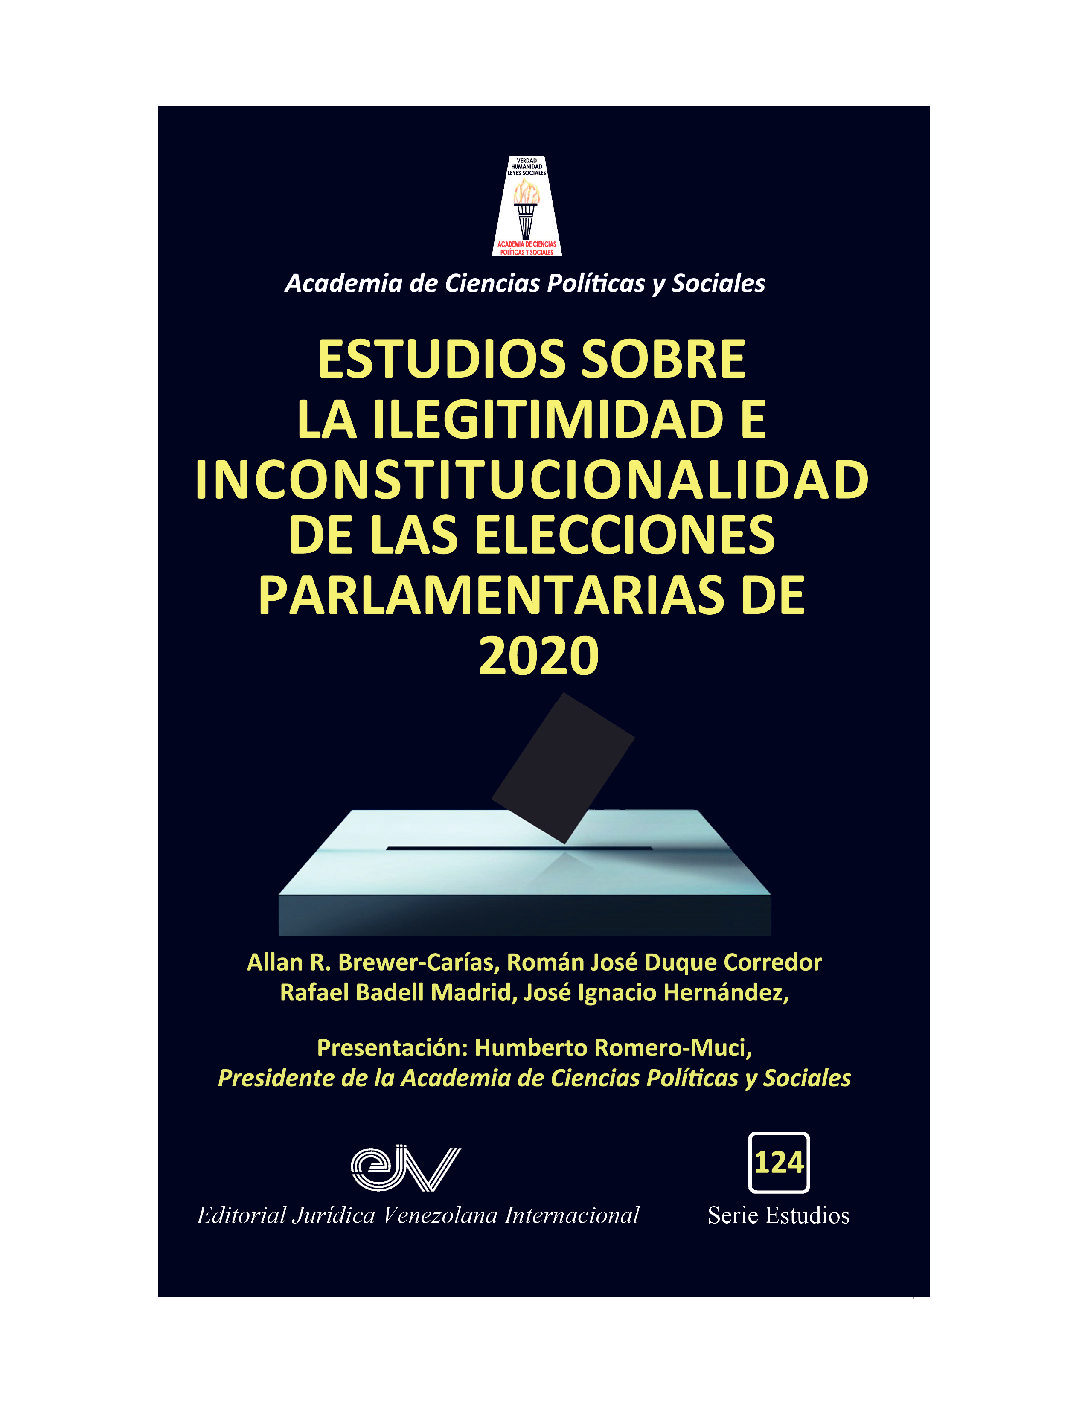 Nueva publicación de Acienpol y Editorial Jurídica Venezolana Internacional: «Estudios sobre la ilegitimidad e inconstitucionalidad de las elecciones parlamentarias de 2020”